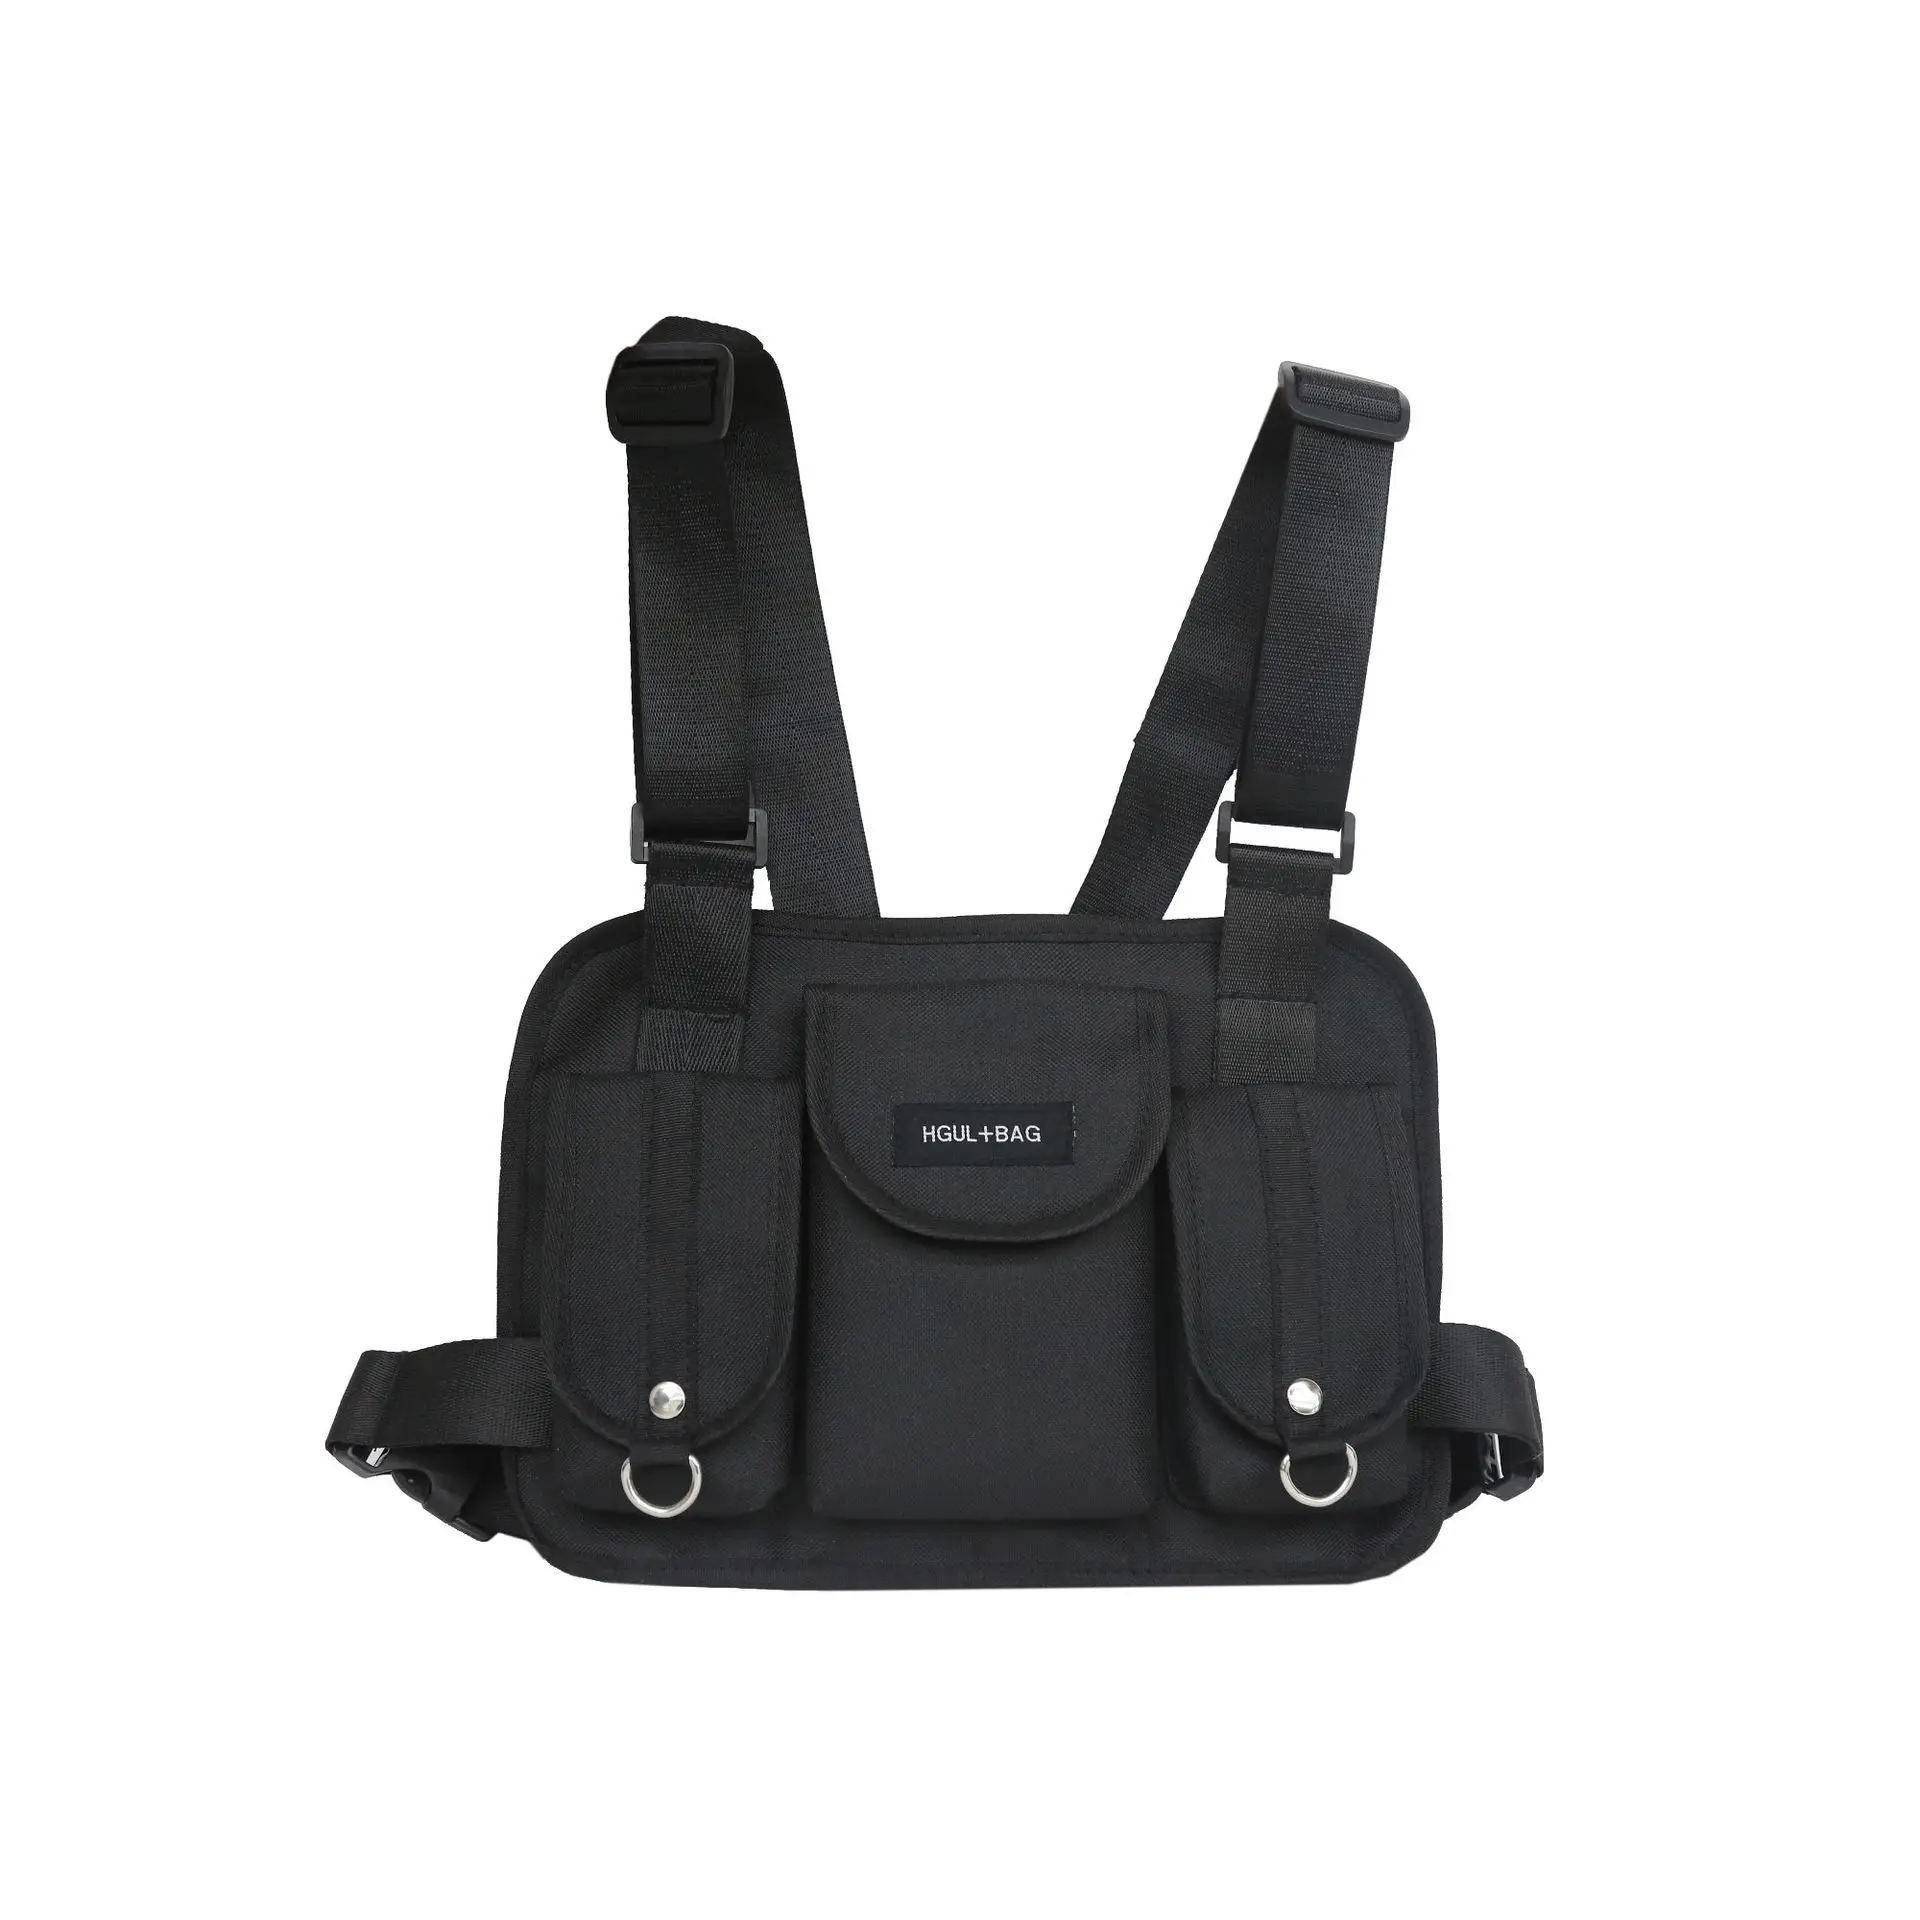 Горячая Распродажа! Сумка Канье для груди в стиле хип-хоп, уличная Функциональная сумка, Военная Тактическая нагрудная сумка, сумка с перекрестной талией, сумка Канье Уэст - Цвет: black